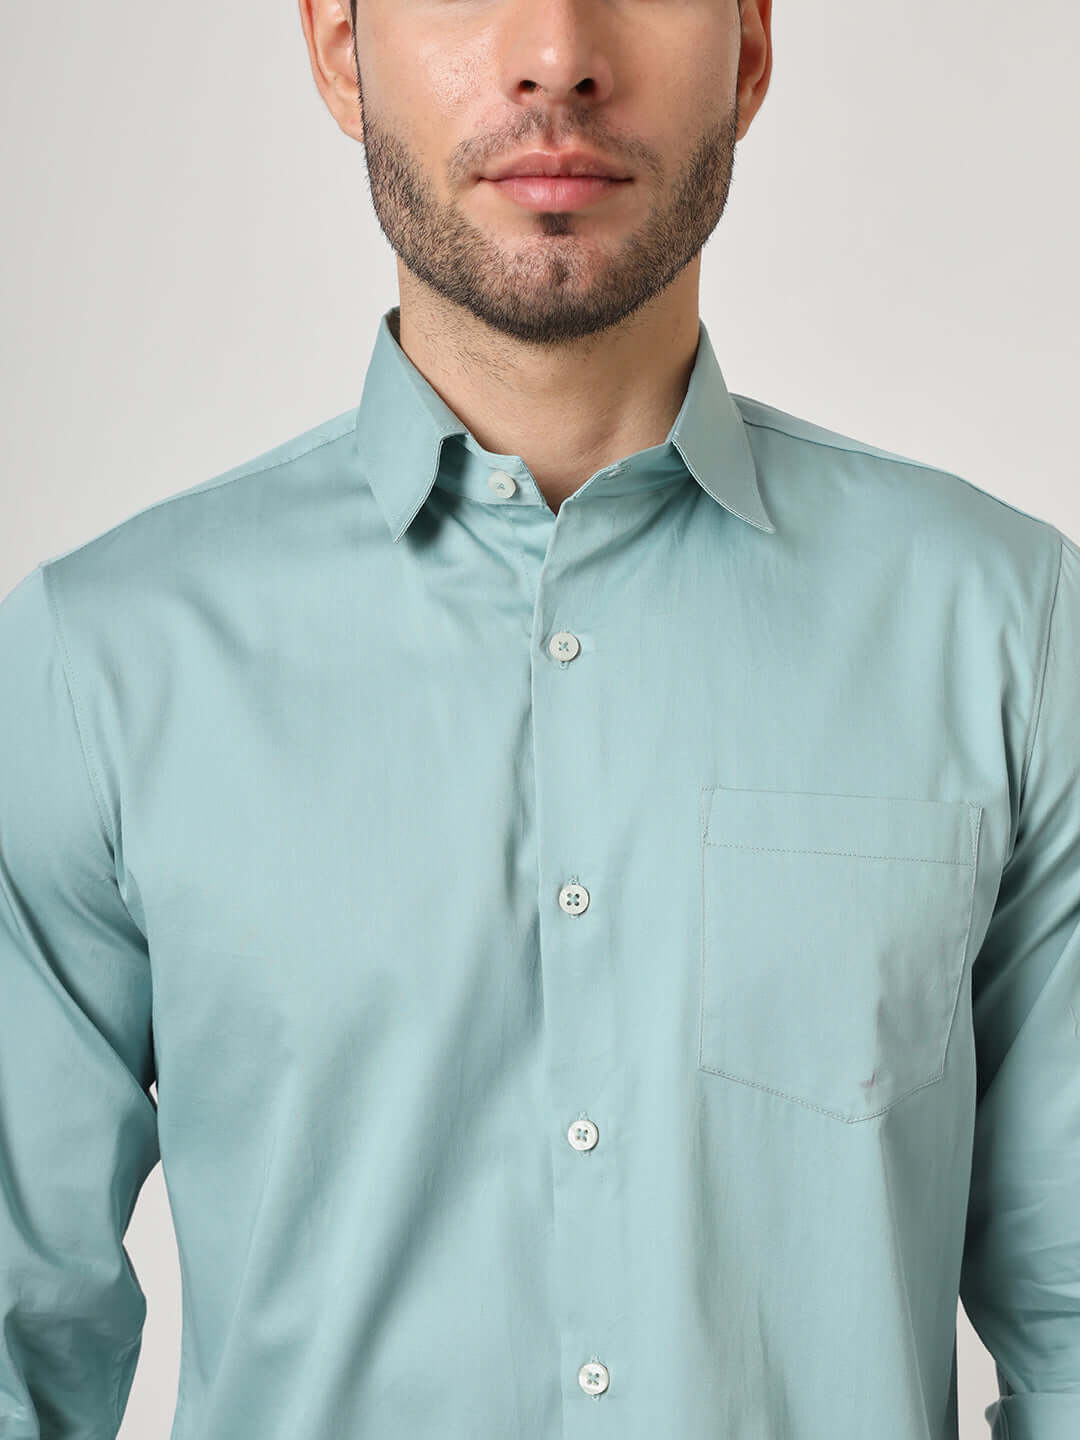 Premium Cotton Satin Greyish Green Shirt